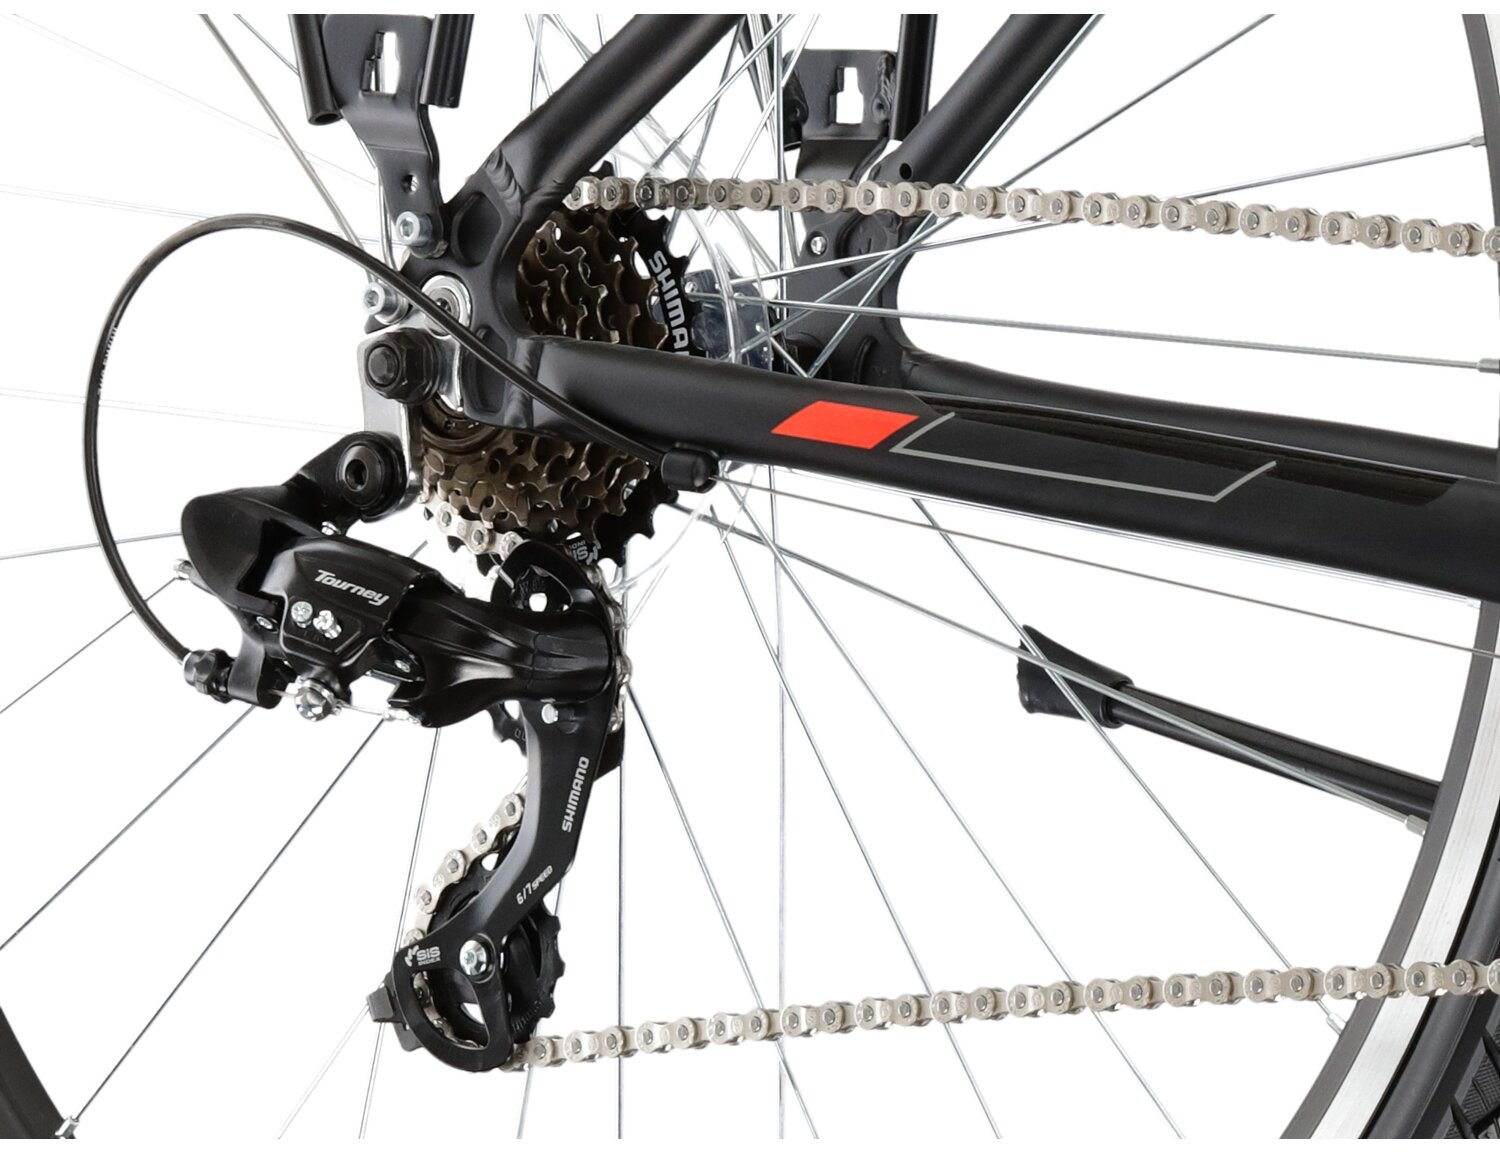  Tylna siedmiobiegowa przerzutka Shimano Tourney TY300 oraz hamulce v-brake w rowerze trekkingowym KROSS Explorer 1.1 